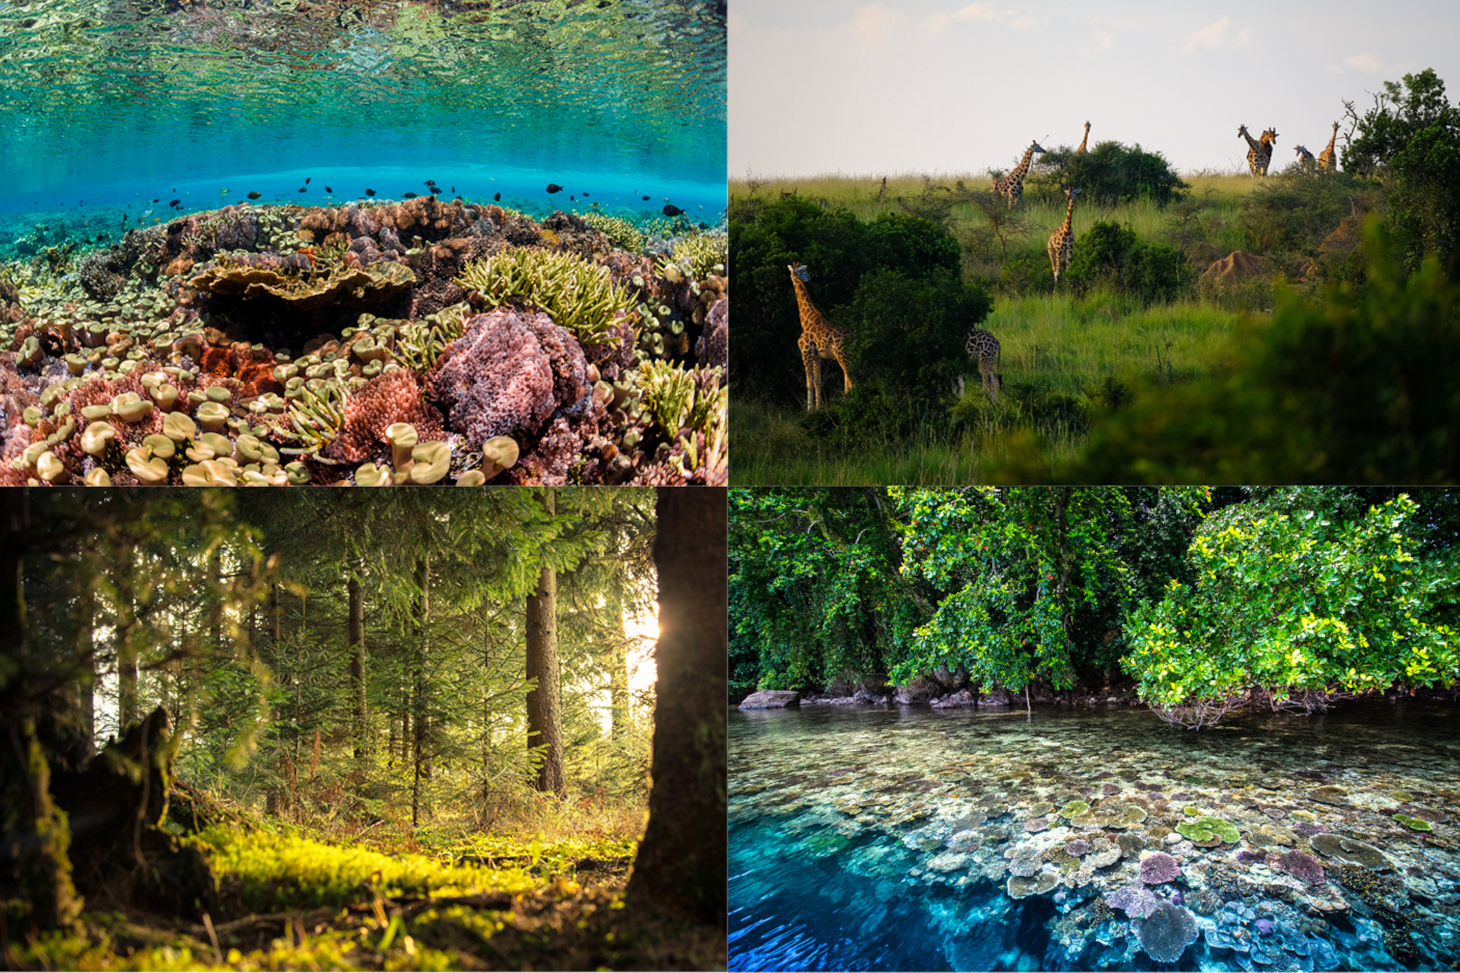 Exemples d’écosystèmes vulnérables : récifs coralliens, savane, forêt tempérée, mangroves.